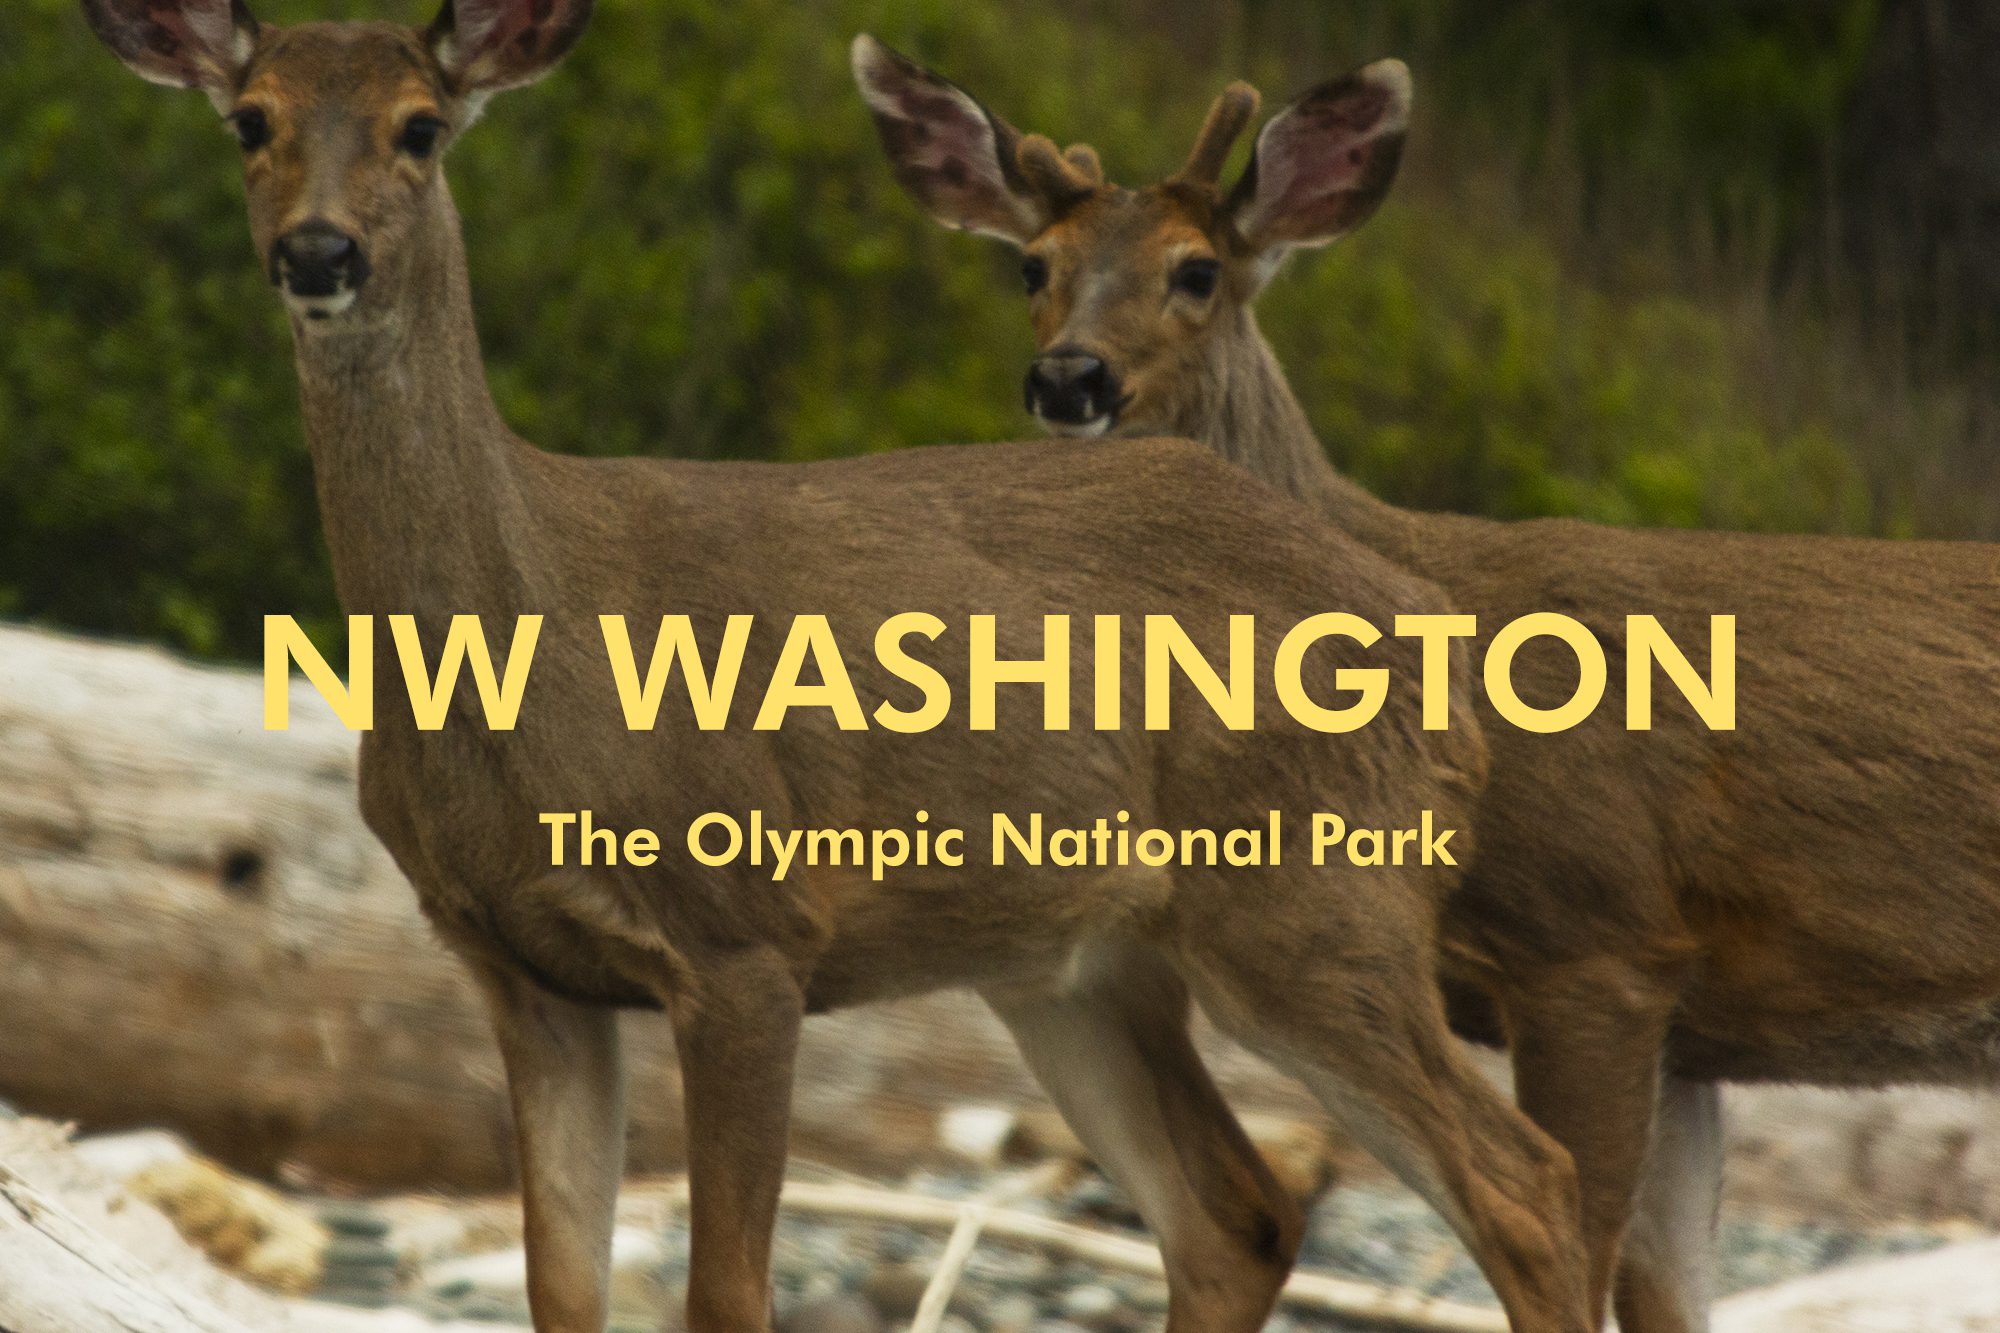 The Olympic National Park, Washington